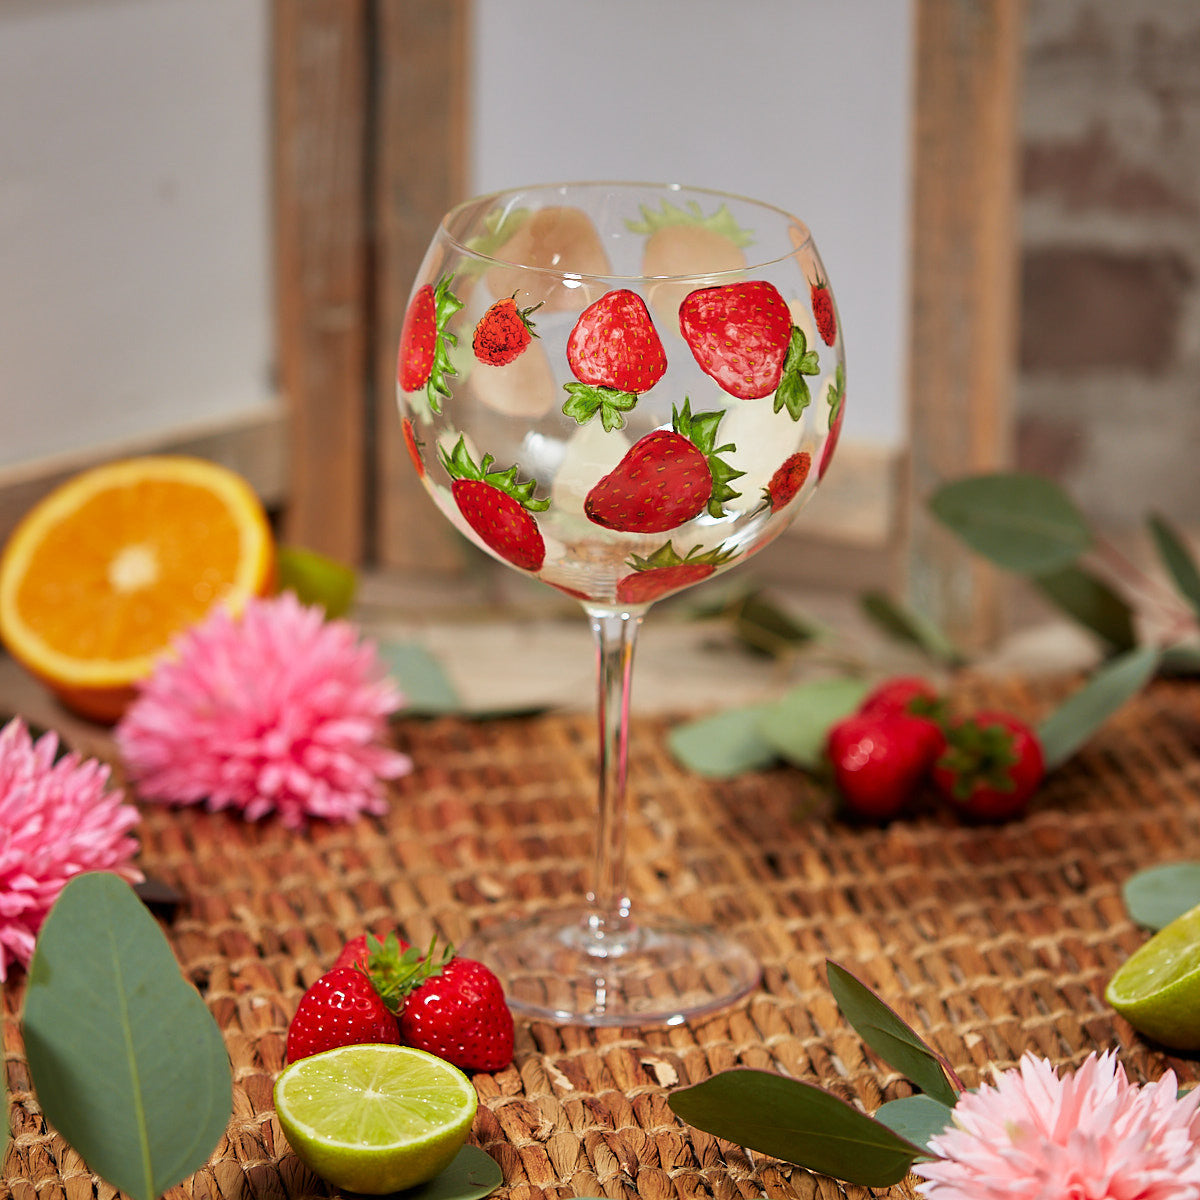 Gin Glass - Strawberry